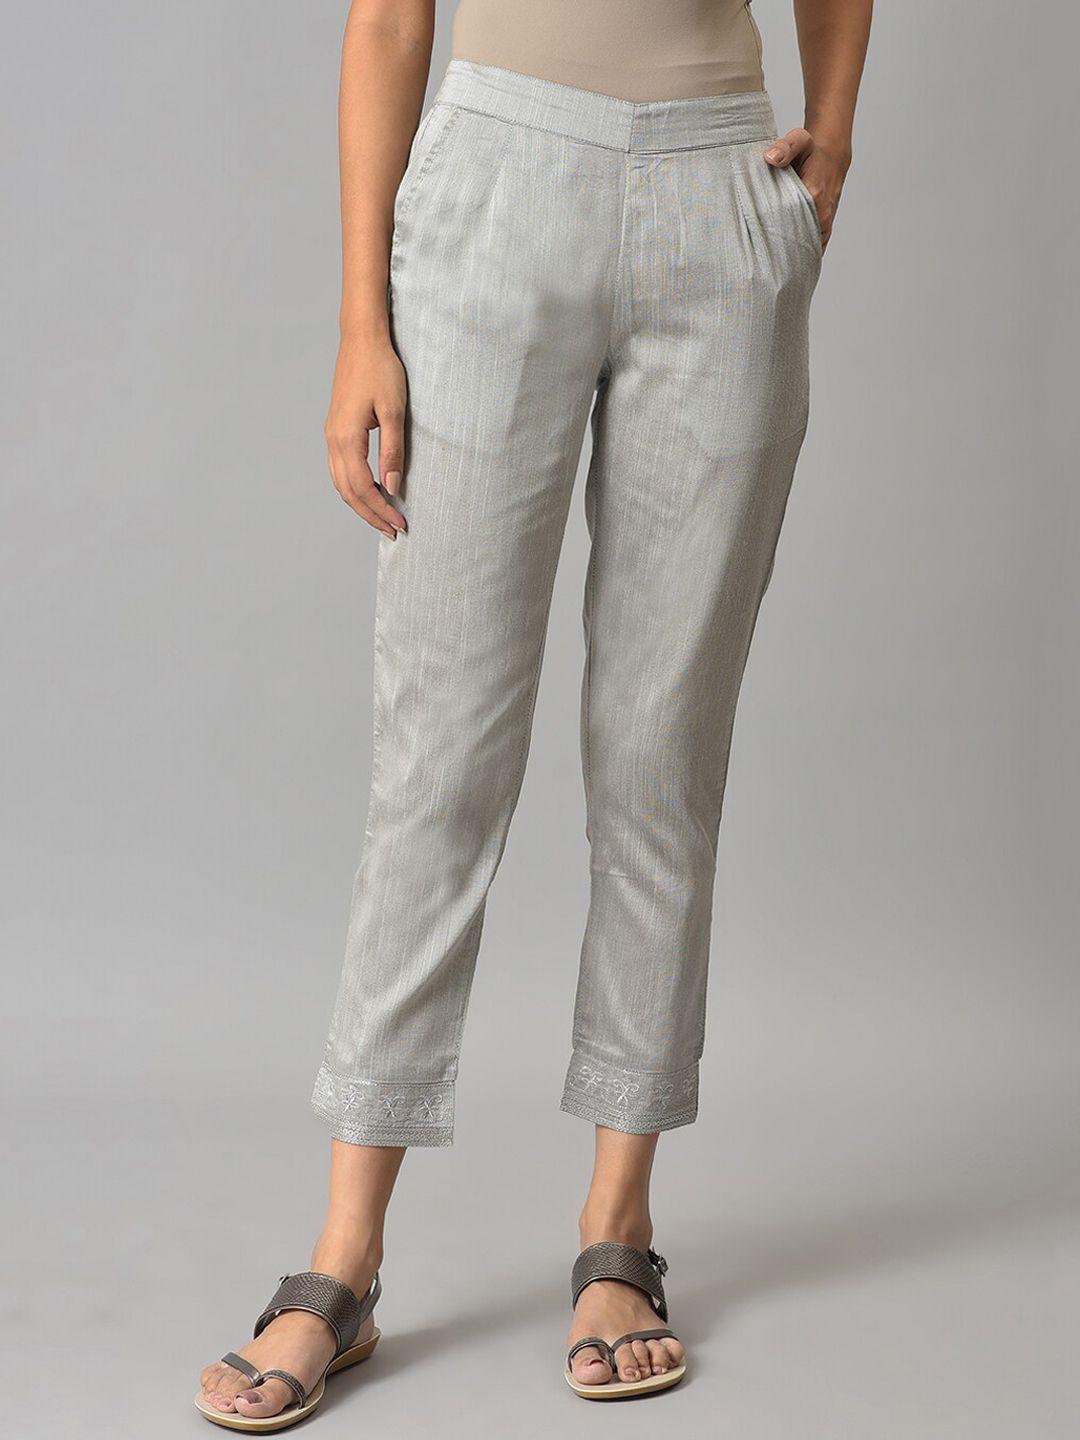 elleven-women-grey-solid-cigarette-trousers